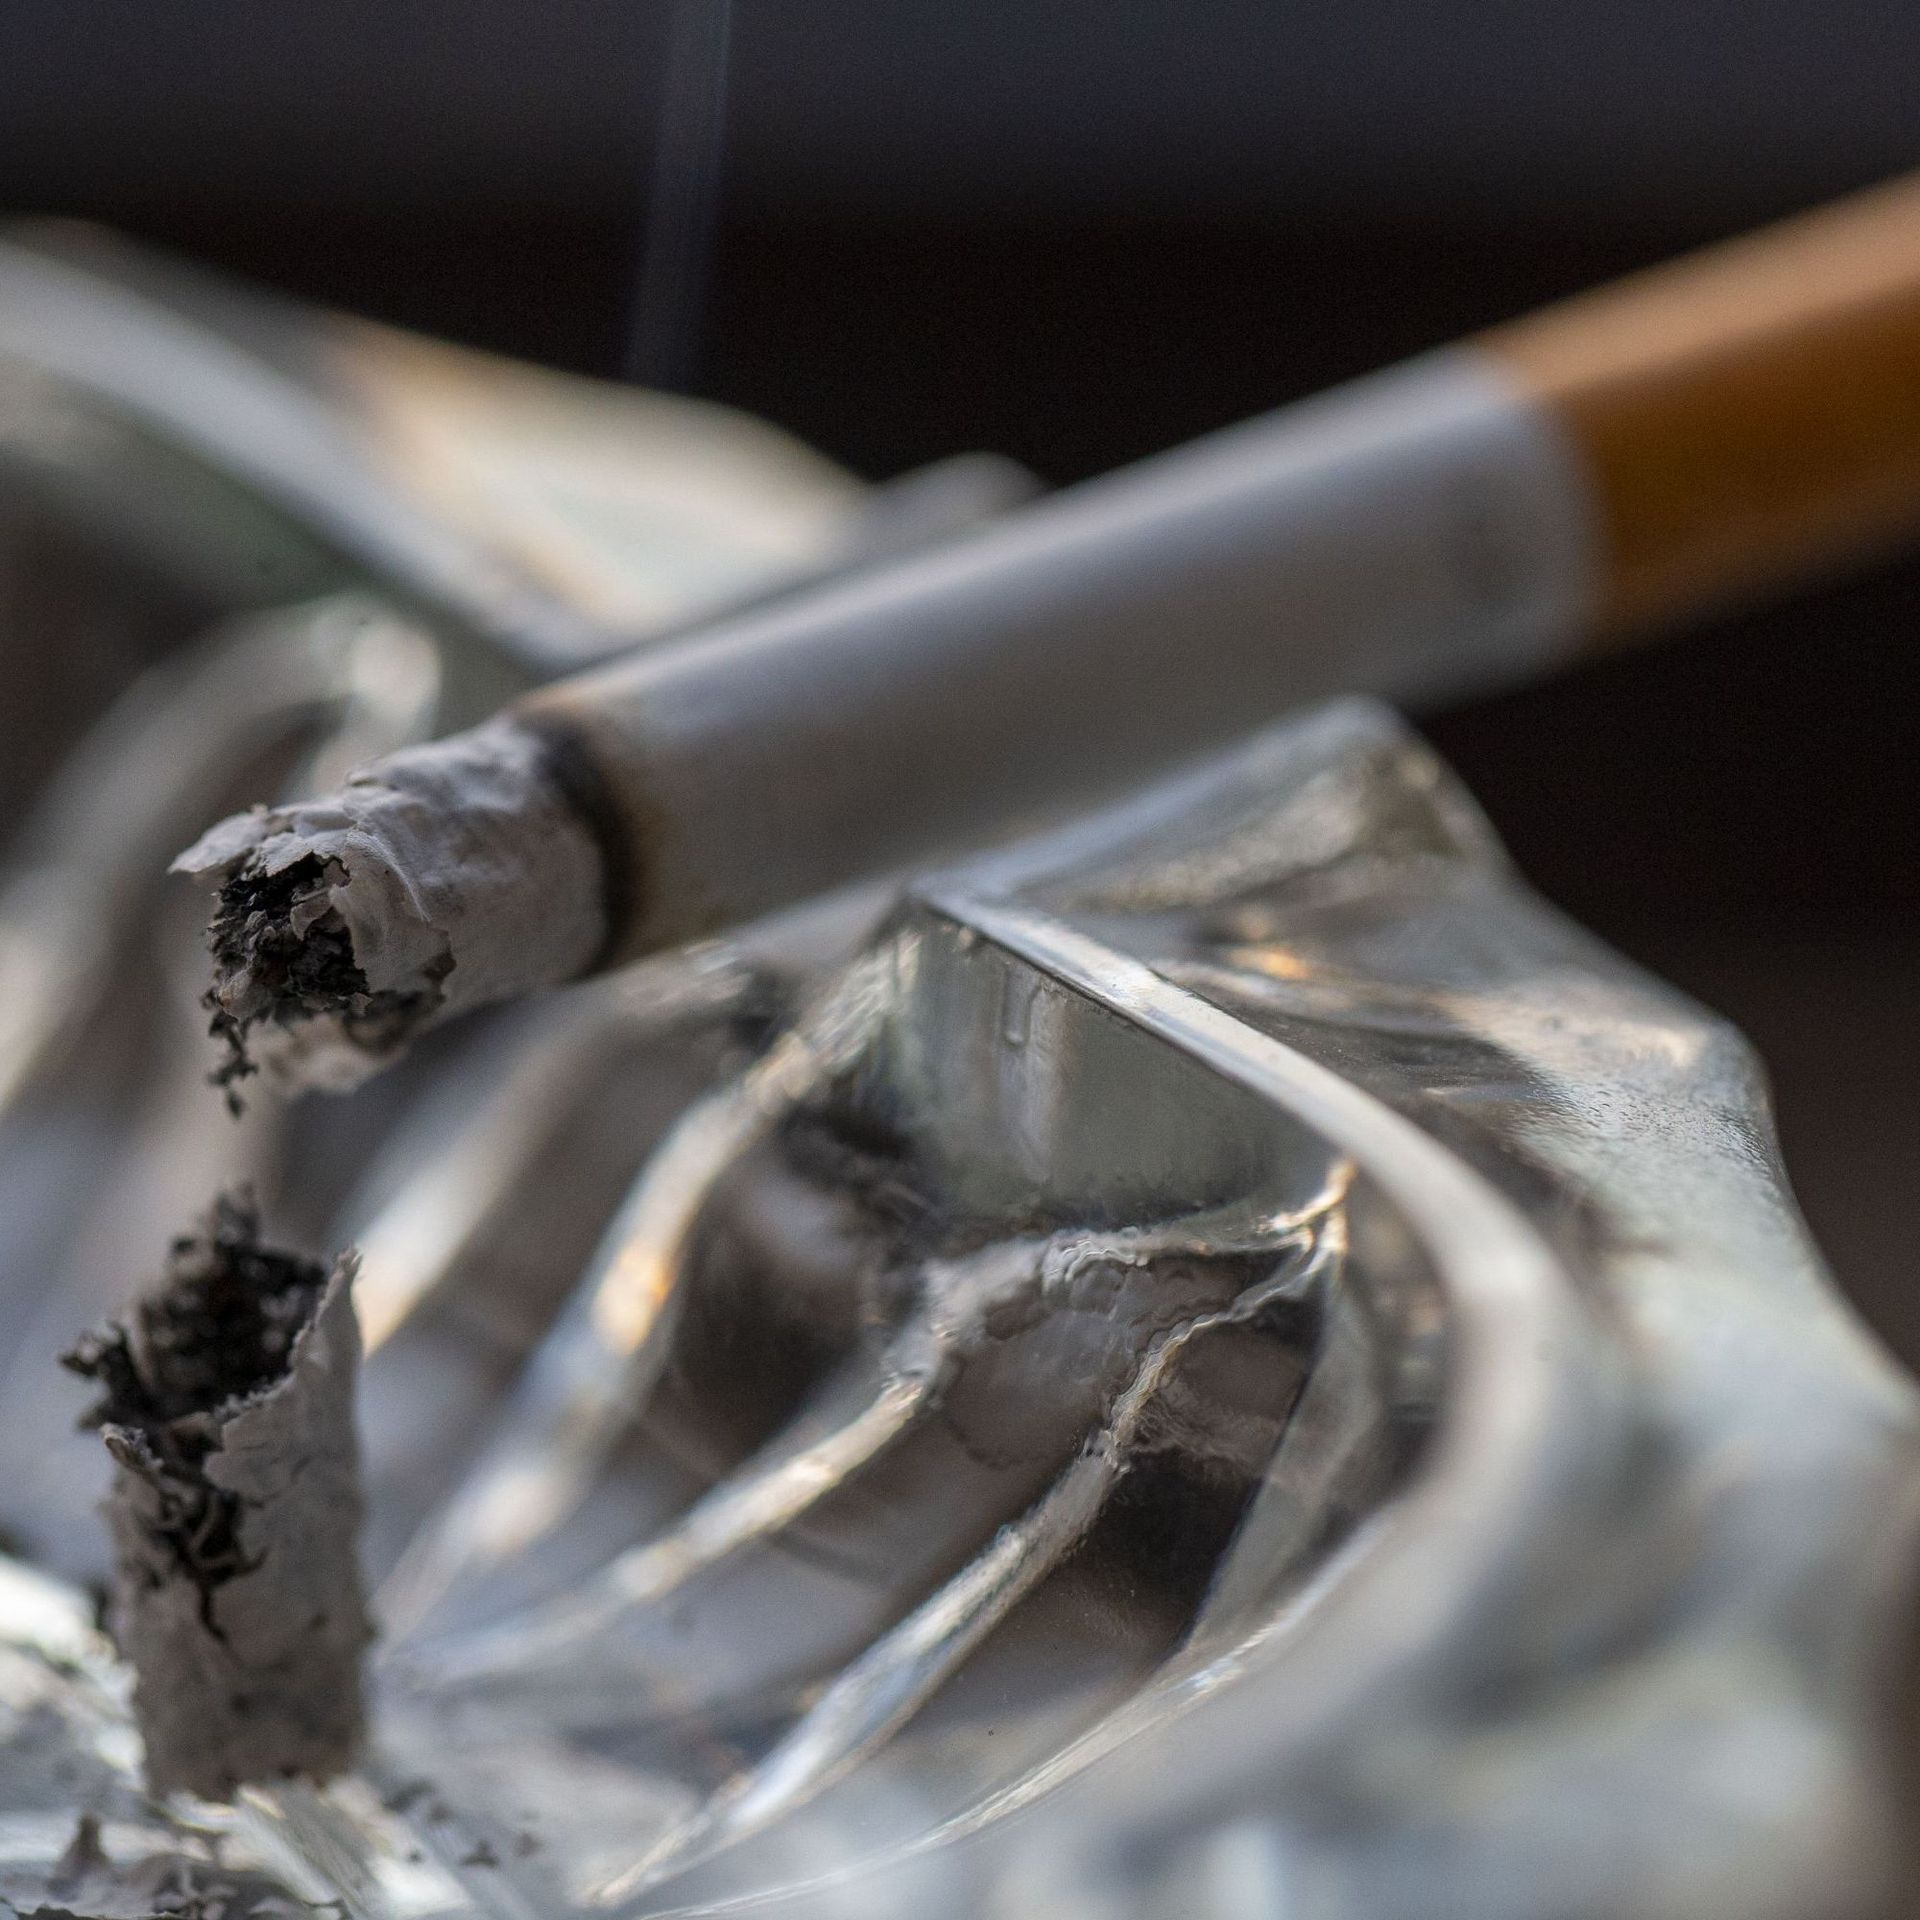 La Belgique lance un plan anti-tabac ambitieux: la France doit